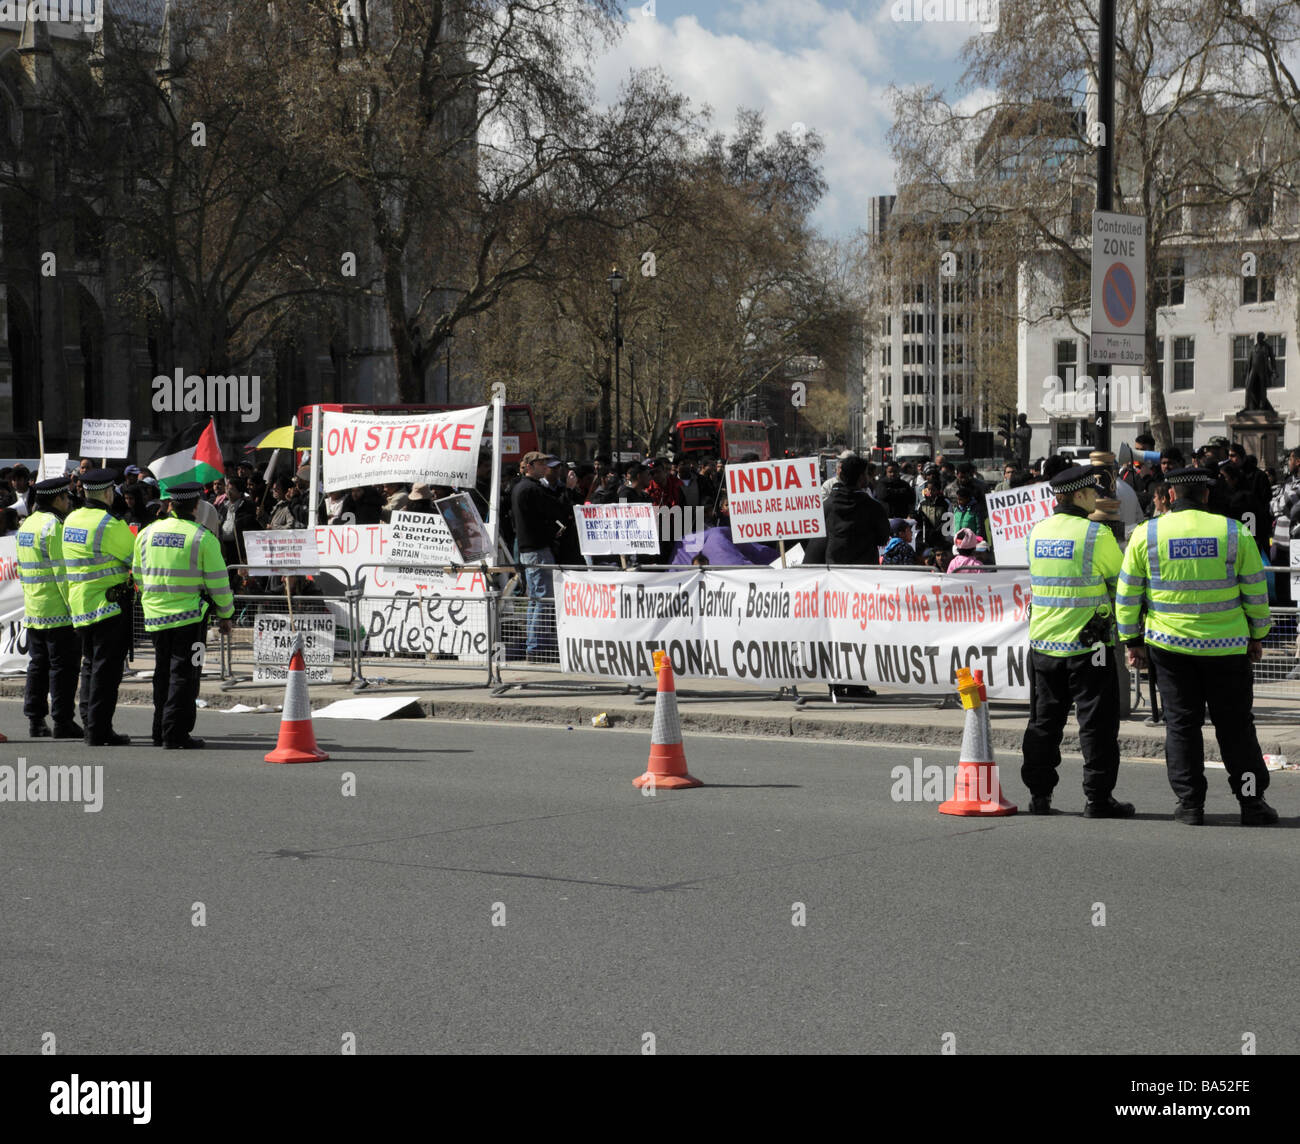 Groupe de manifestants tamouls démontrant par les combats au Sri Lanka, à l'extérieur du Parlement, Londres, Angleterre, Royaume-Uni. Banque D'Images